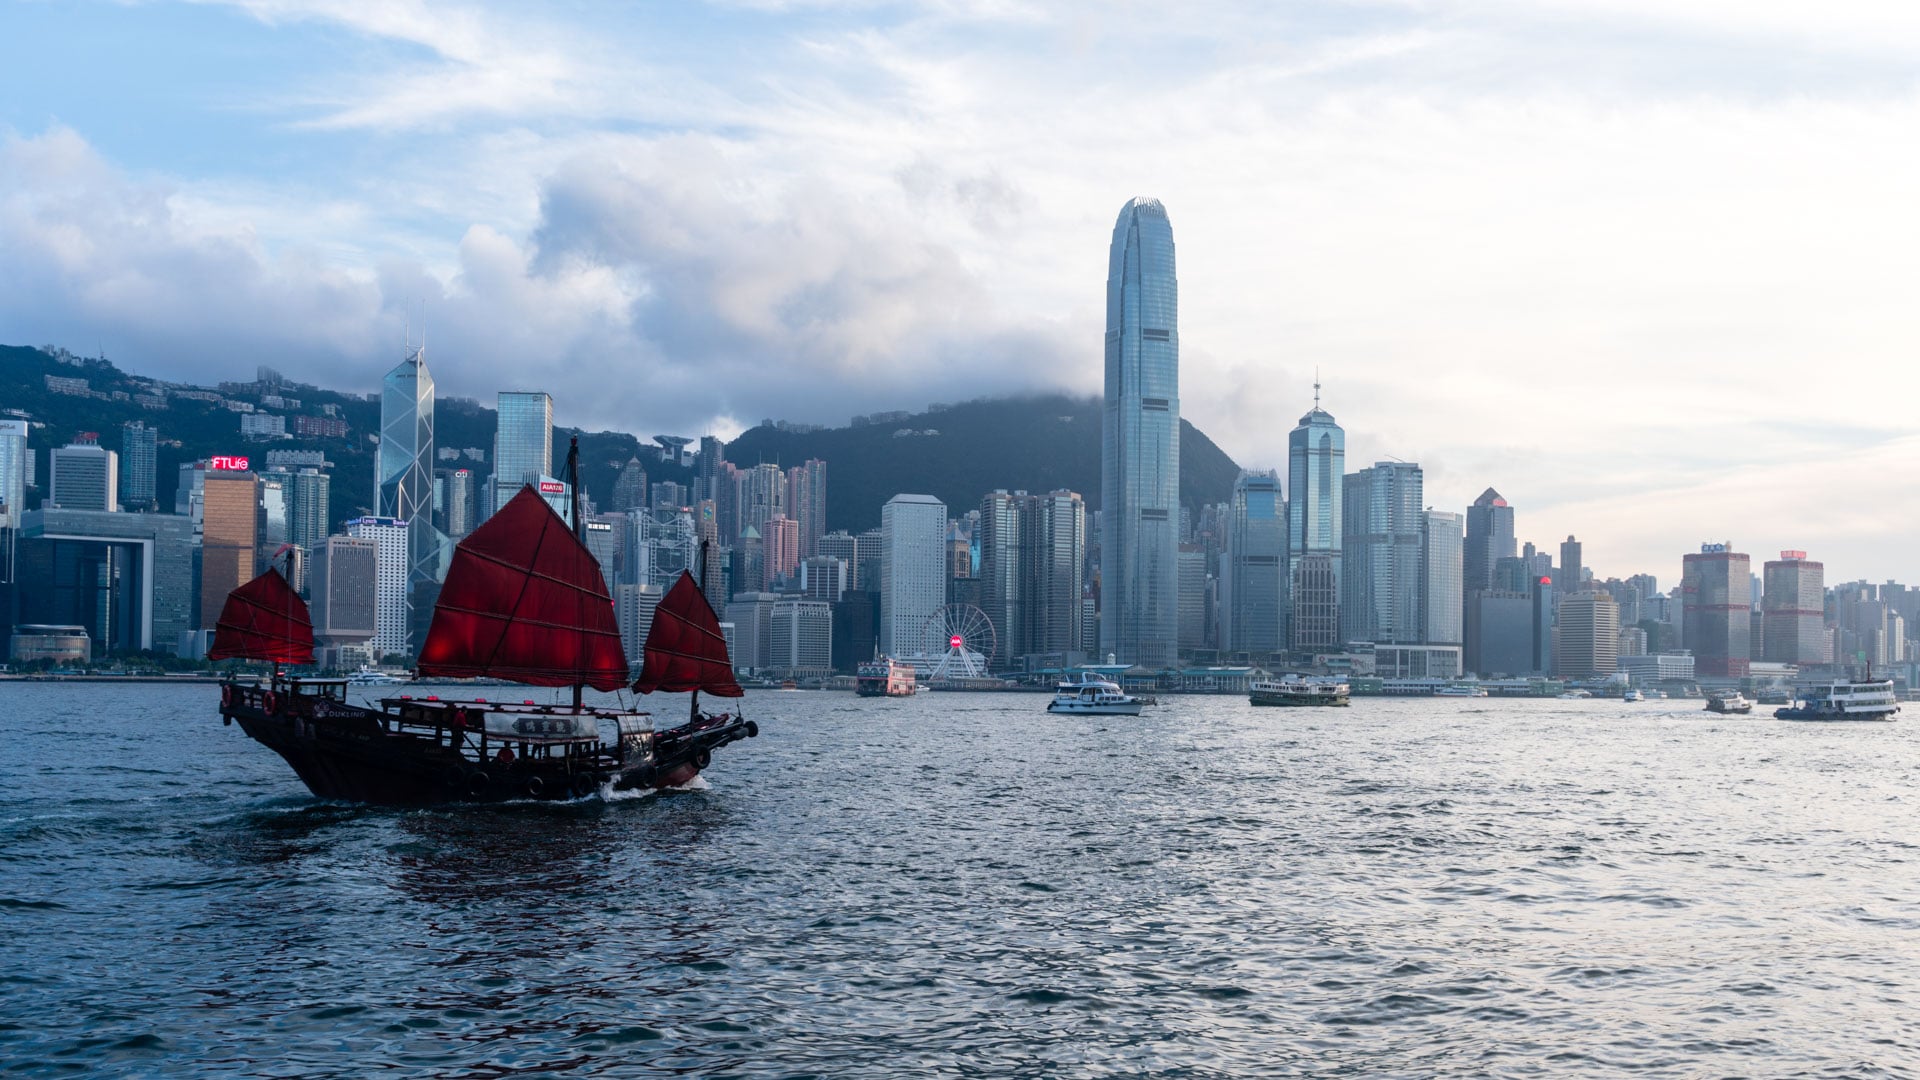 SerialHikers - Blog Voyage Alternatif SerialHikers - Voyage Engagé & Sans avion Destination Hong Kong: notre guide voyage Hong Kong, Asie de l'Est Destinations, Ville